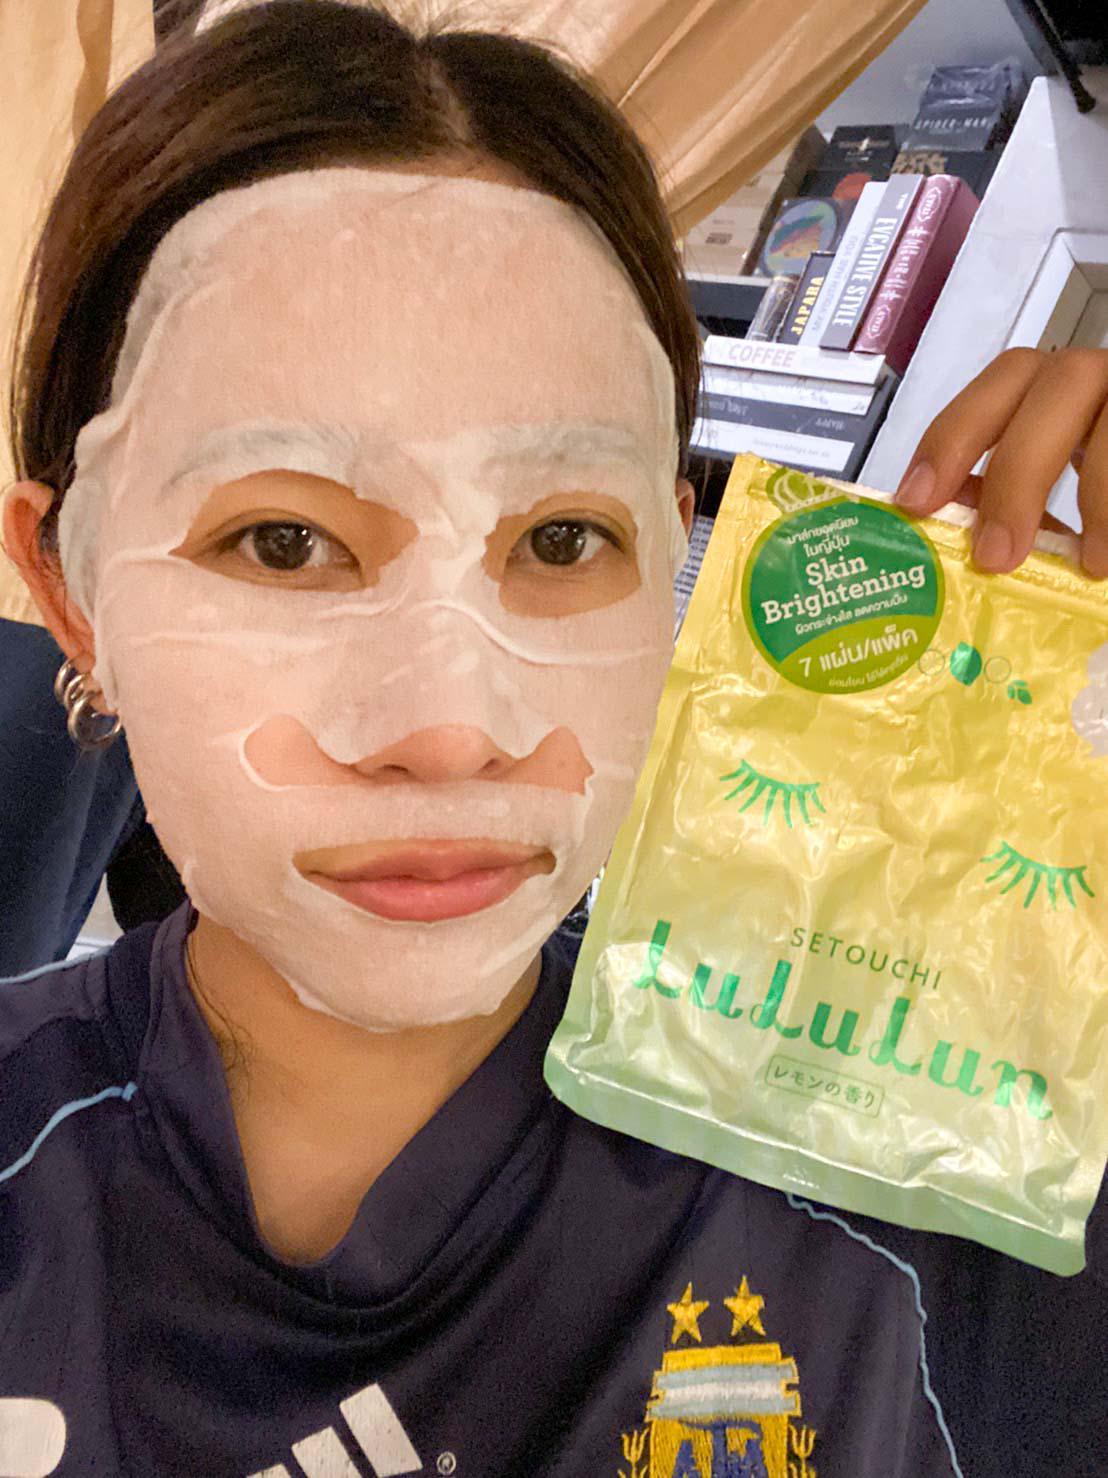 ภาพหน้าปก มาส์กหน้า 7 วันติดเพื่อผิวสวย ด้วย LuLuLun Face Mask Lemon Setouchi ที่:2